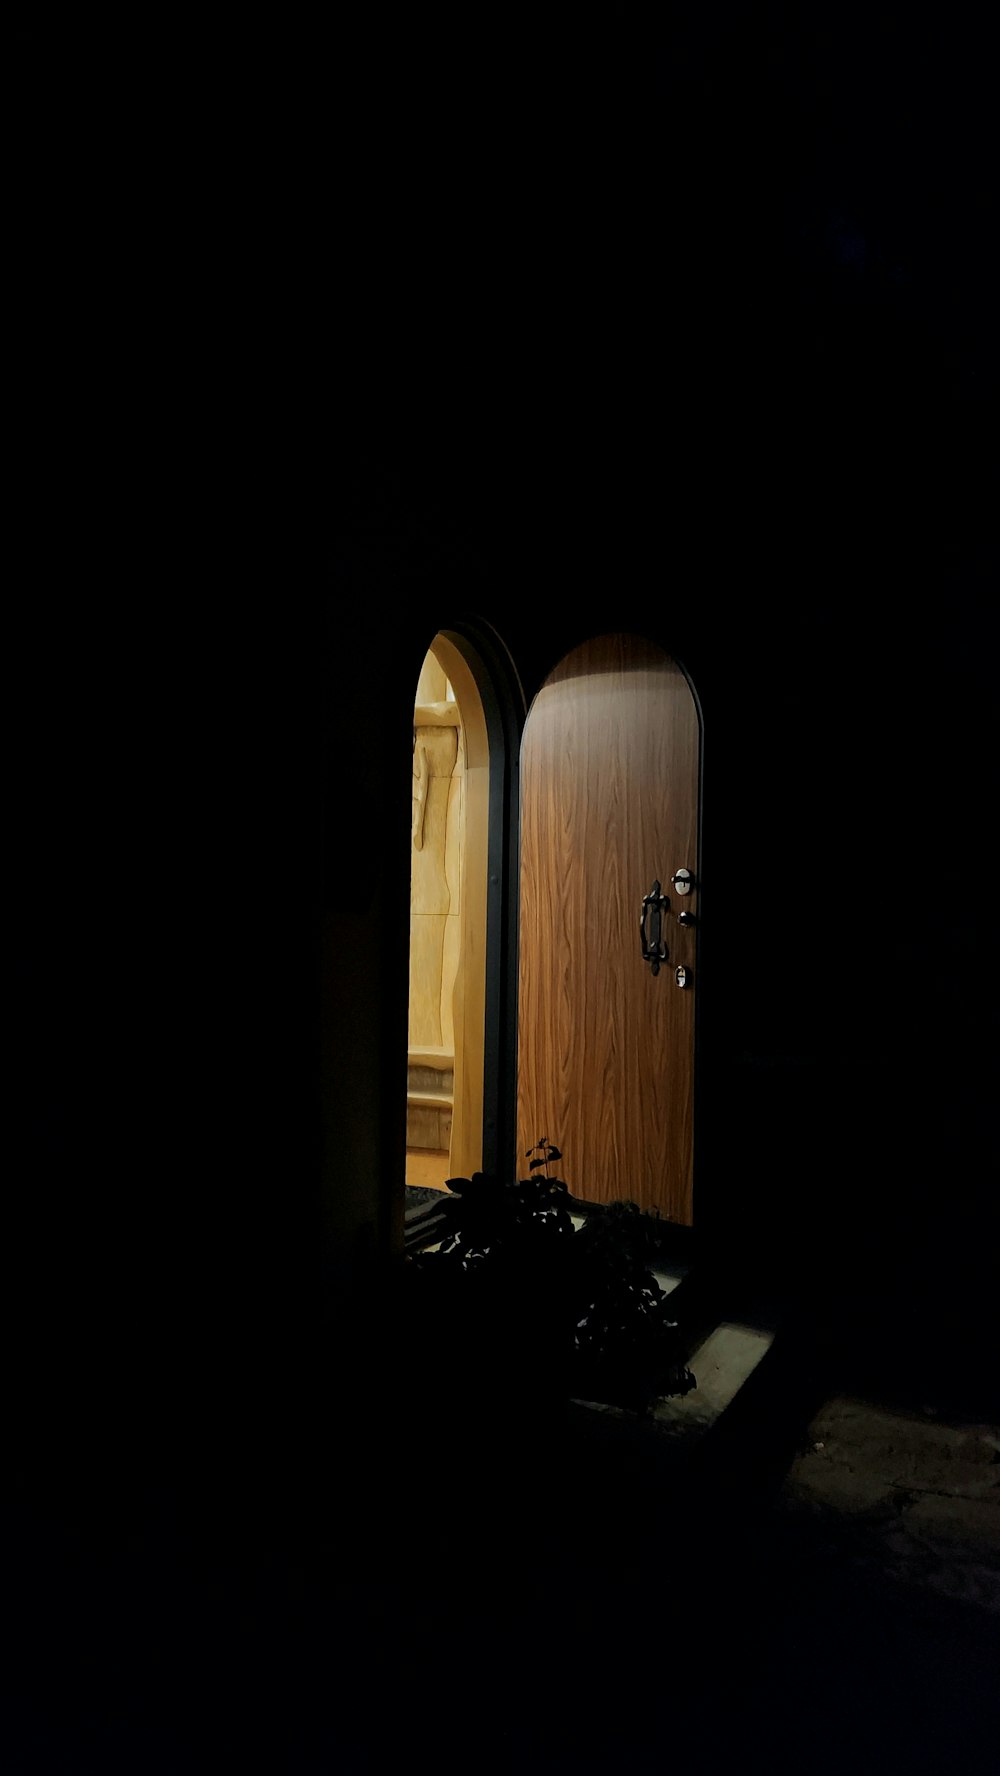 a door is open in a dark room